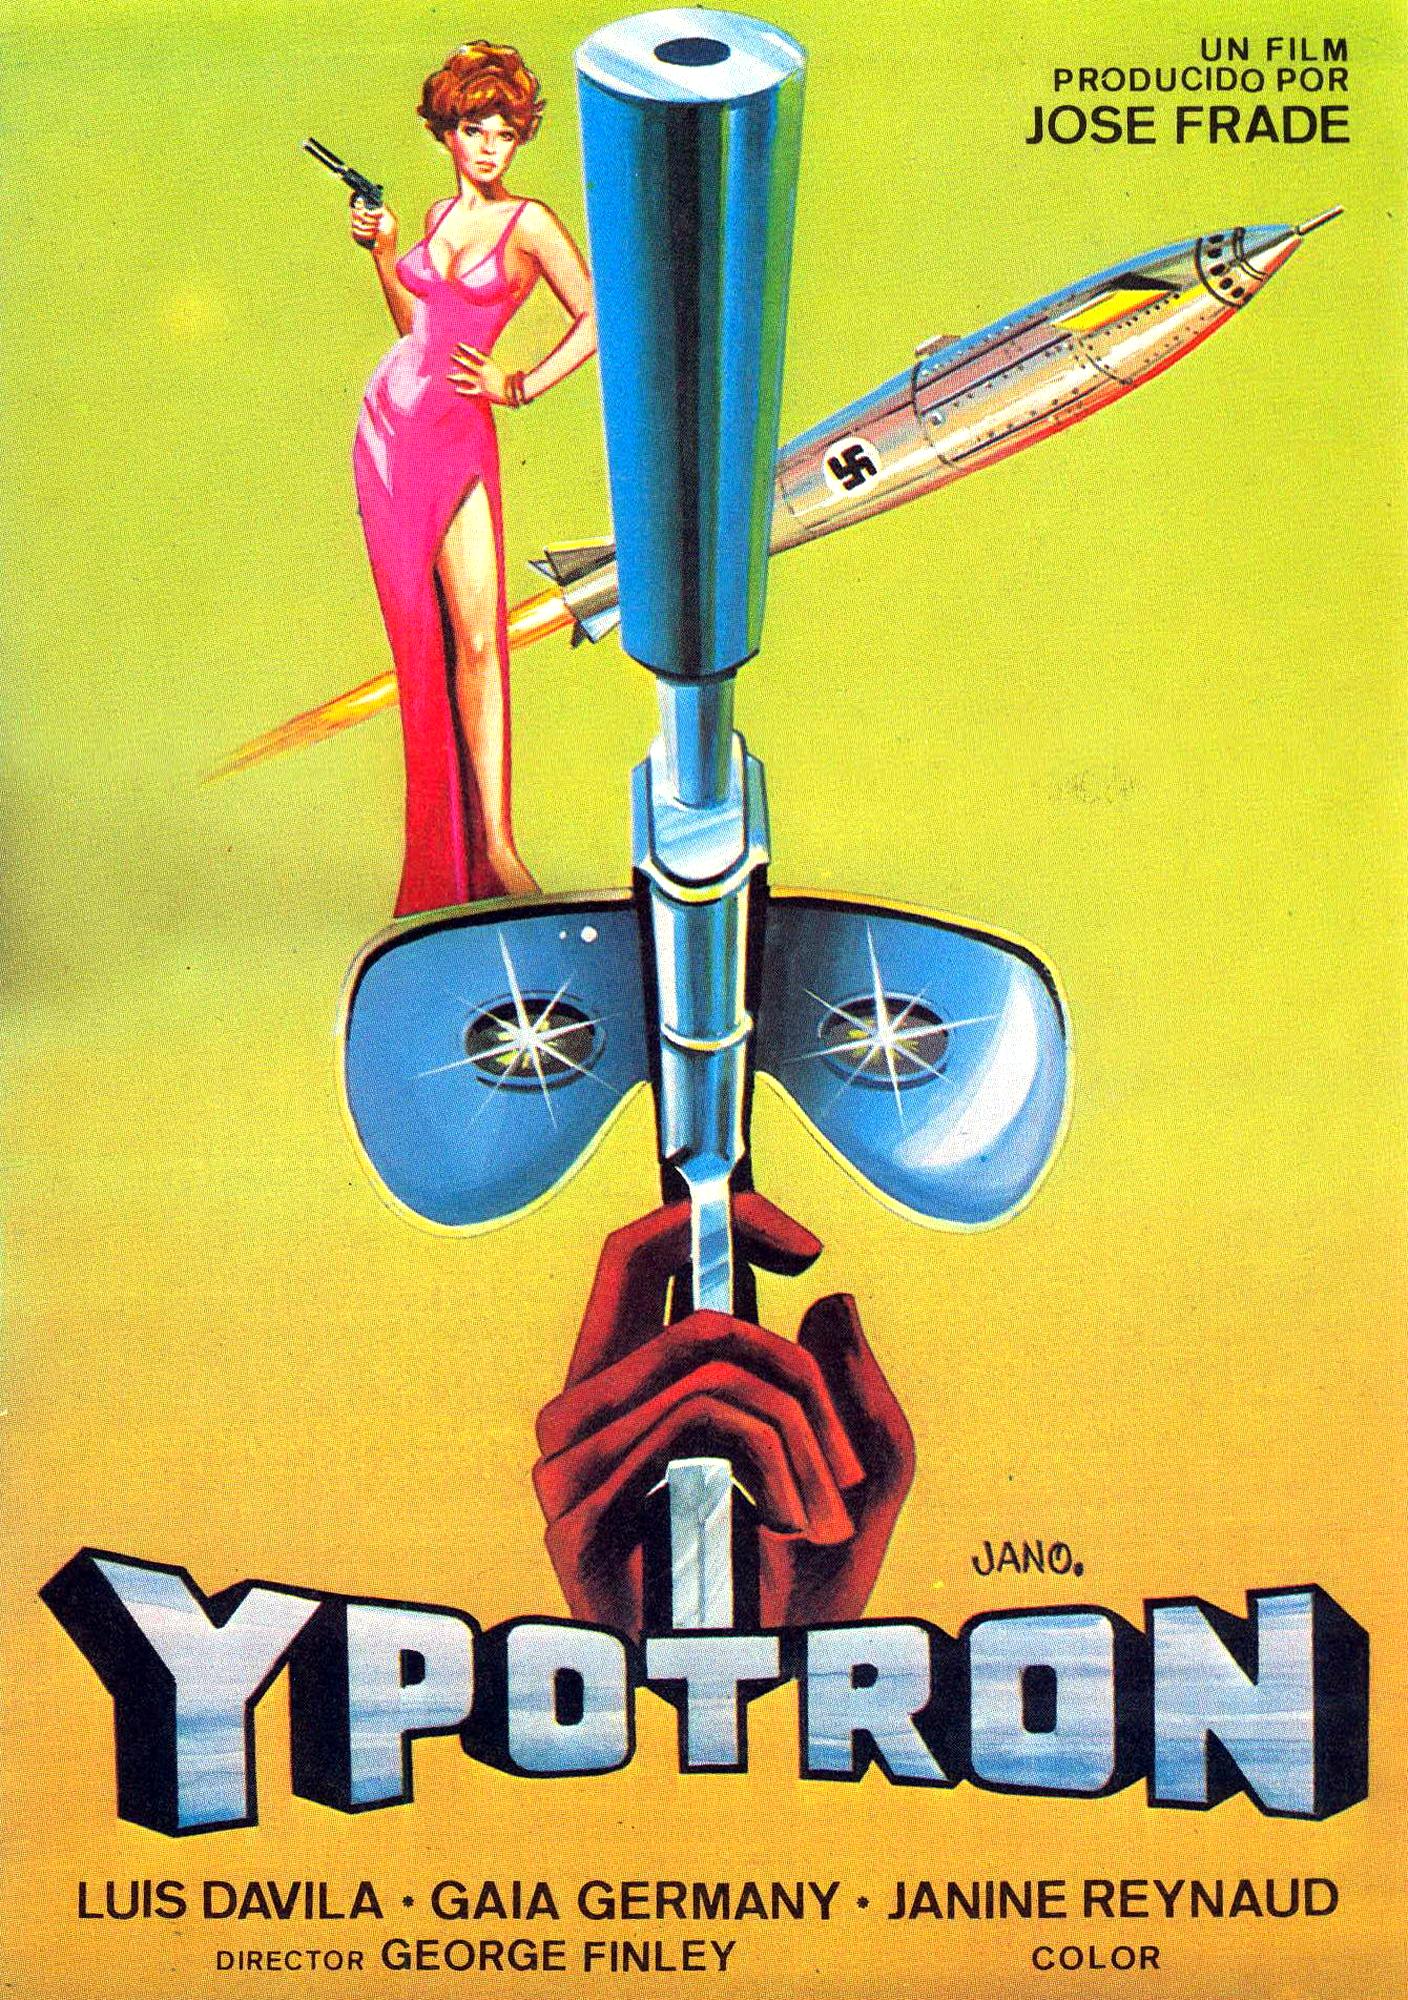 Ypotron - Final Countdown (1966) Screenshot 3 